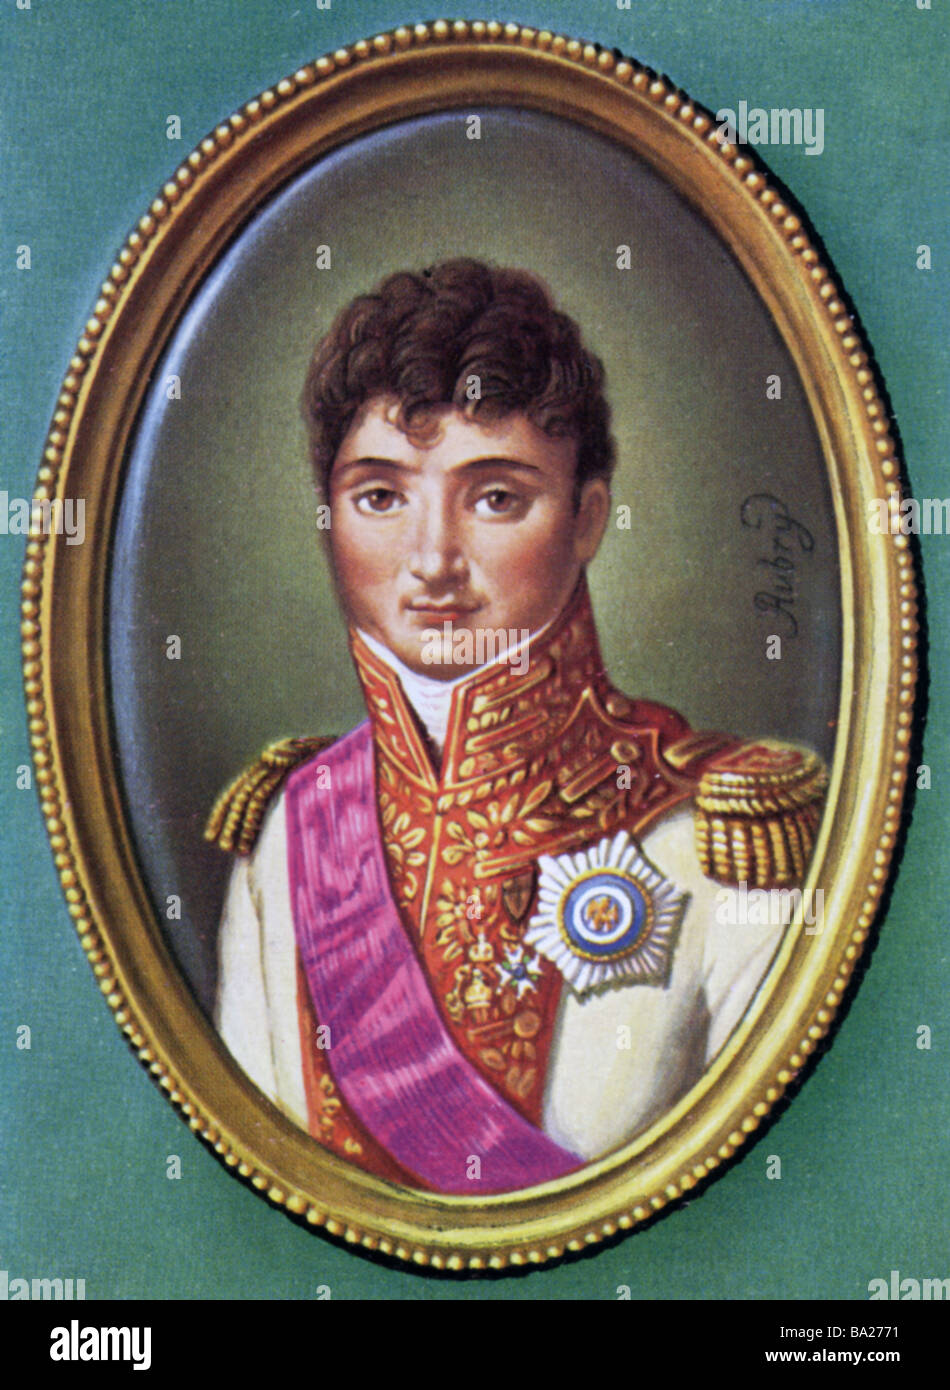 Bonaparte, Girolamo, 15.11.1784 - 24.06.1860, re di Westfalia 1807 - 1813, ritratto, stampa dopo la miniatura da Louis Francois Aub Foto Stock